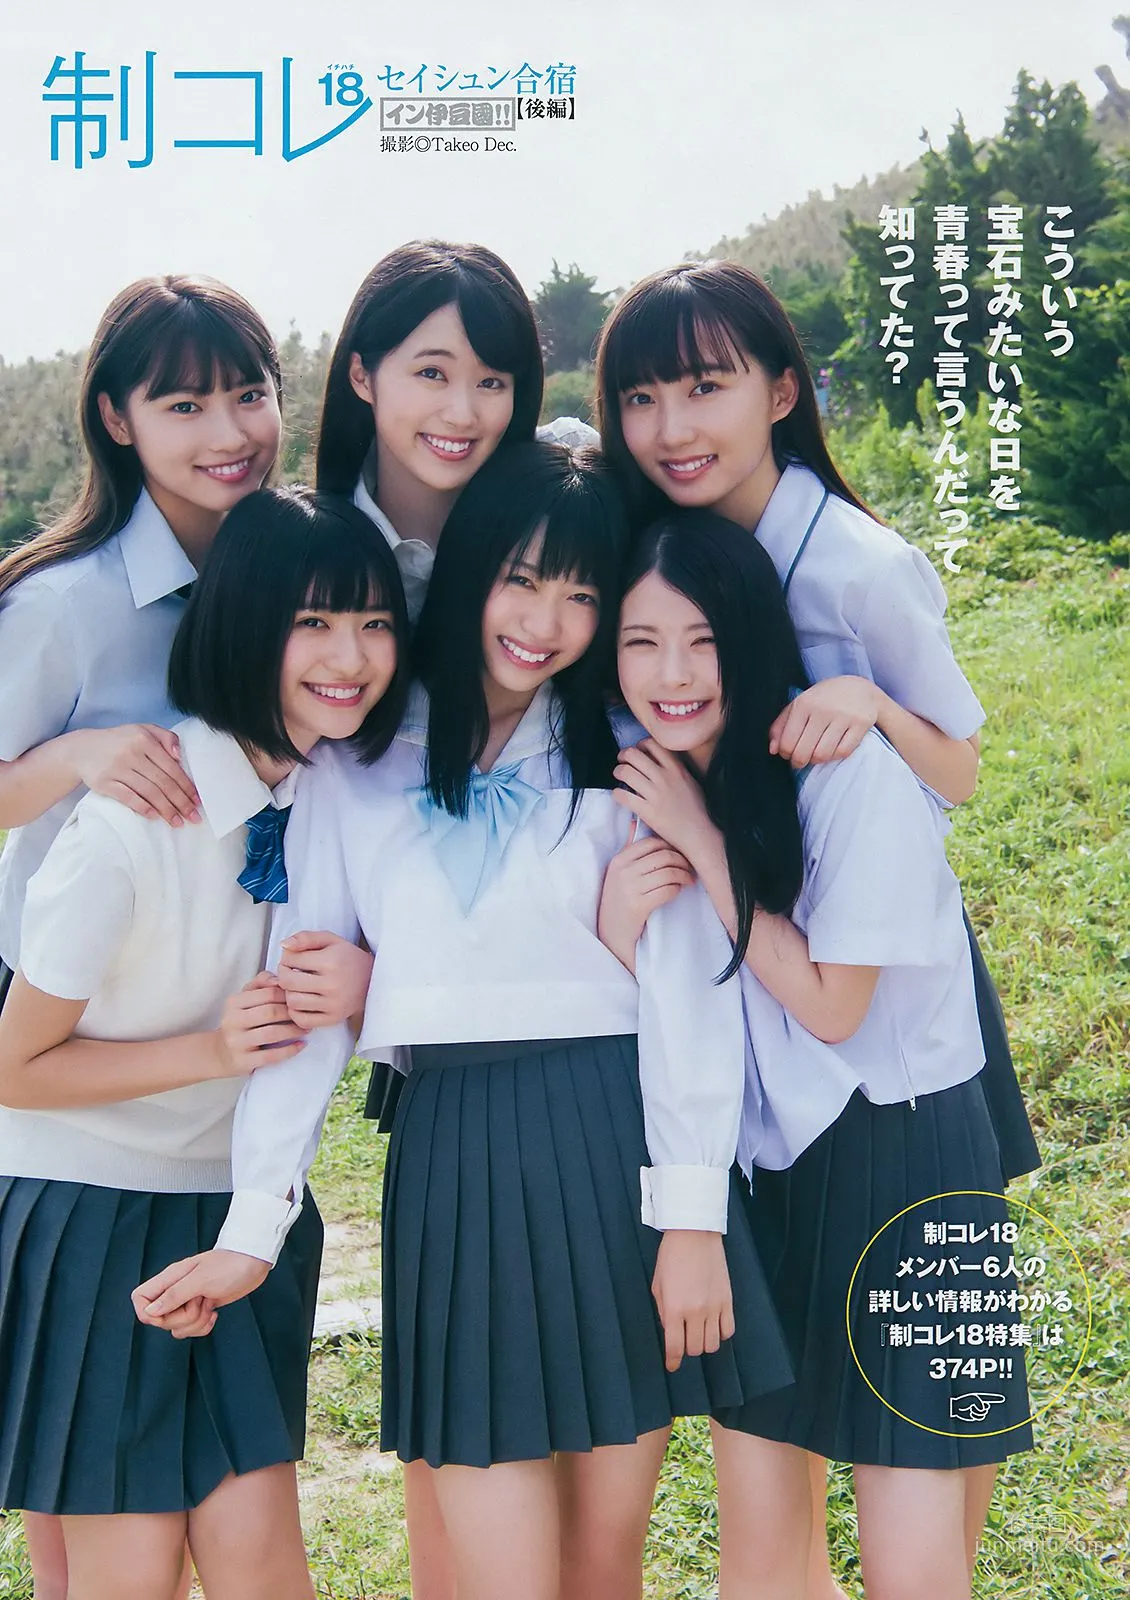 山田南実 来栖りん [Weekly Young Jump] 2018年No.46 写真杂志8